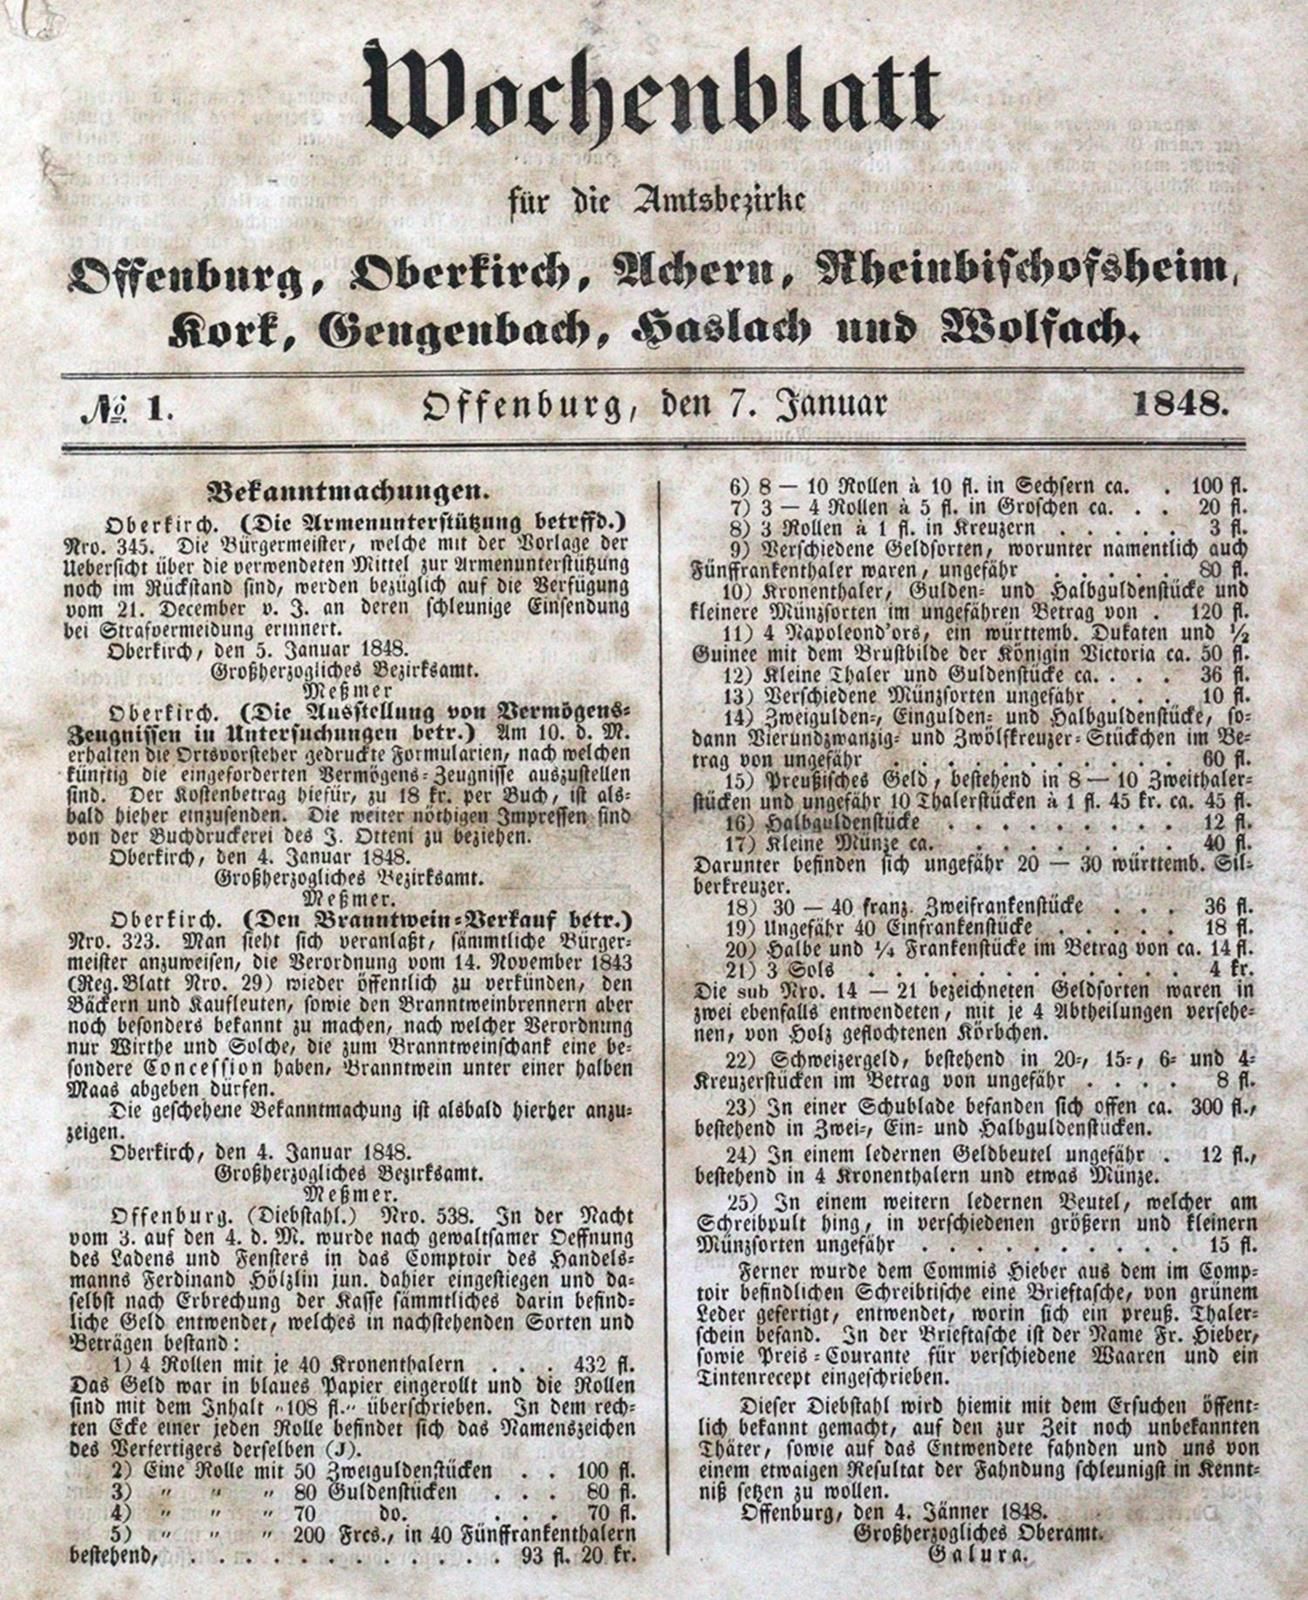 Wochenblatt para los distritos de Offenburg, Oberkirch, Achern, Rheinbischofshei&hellip;